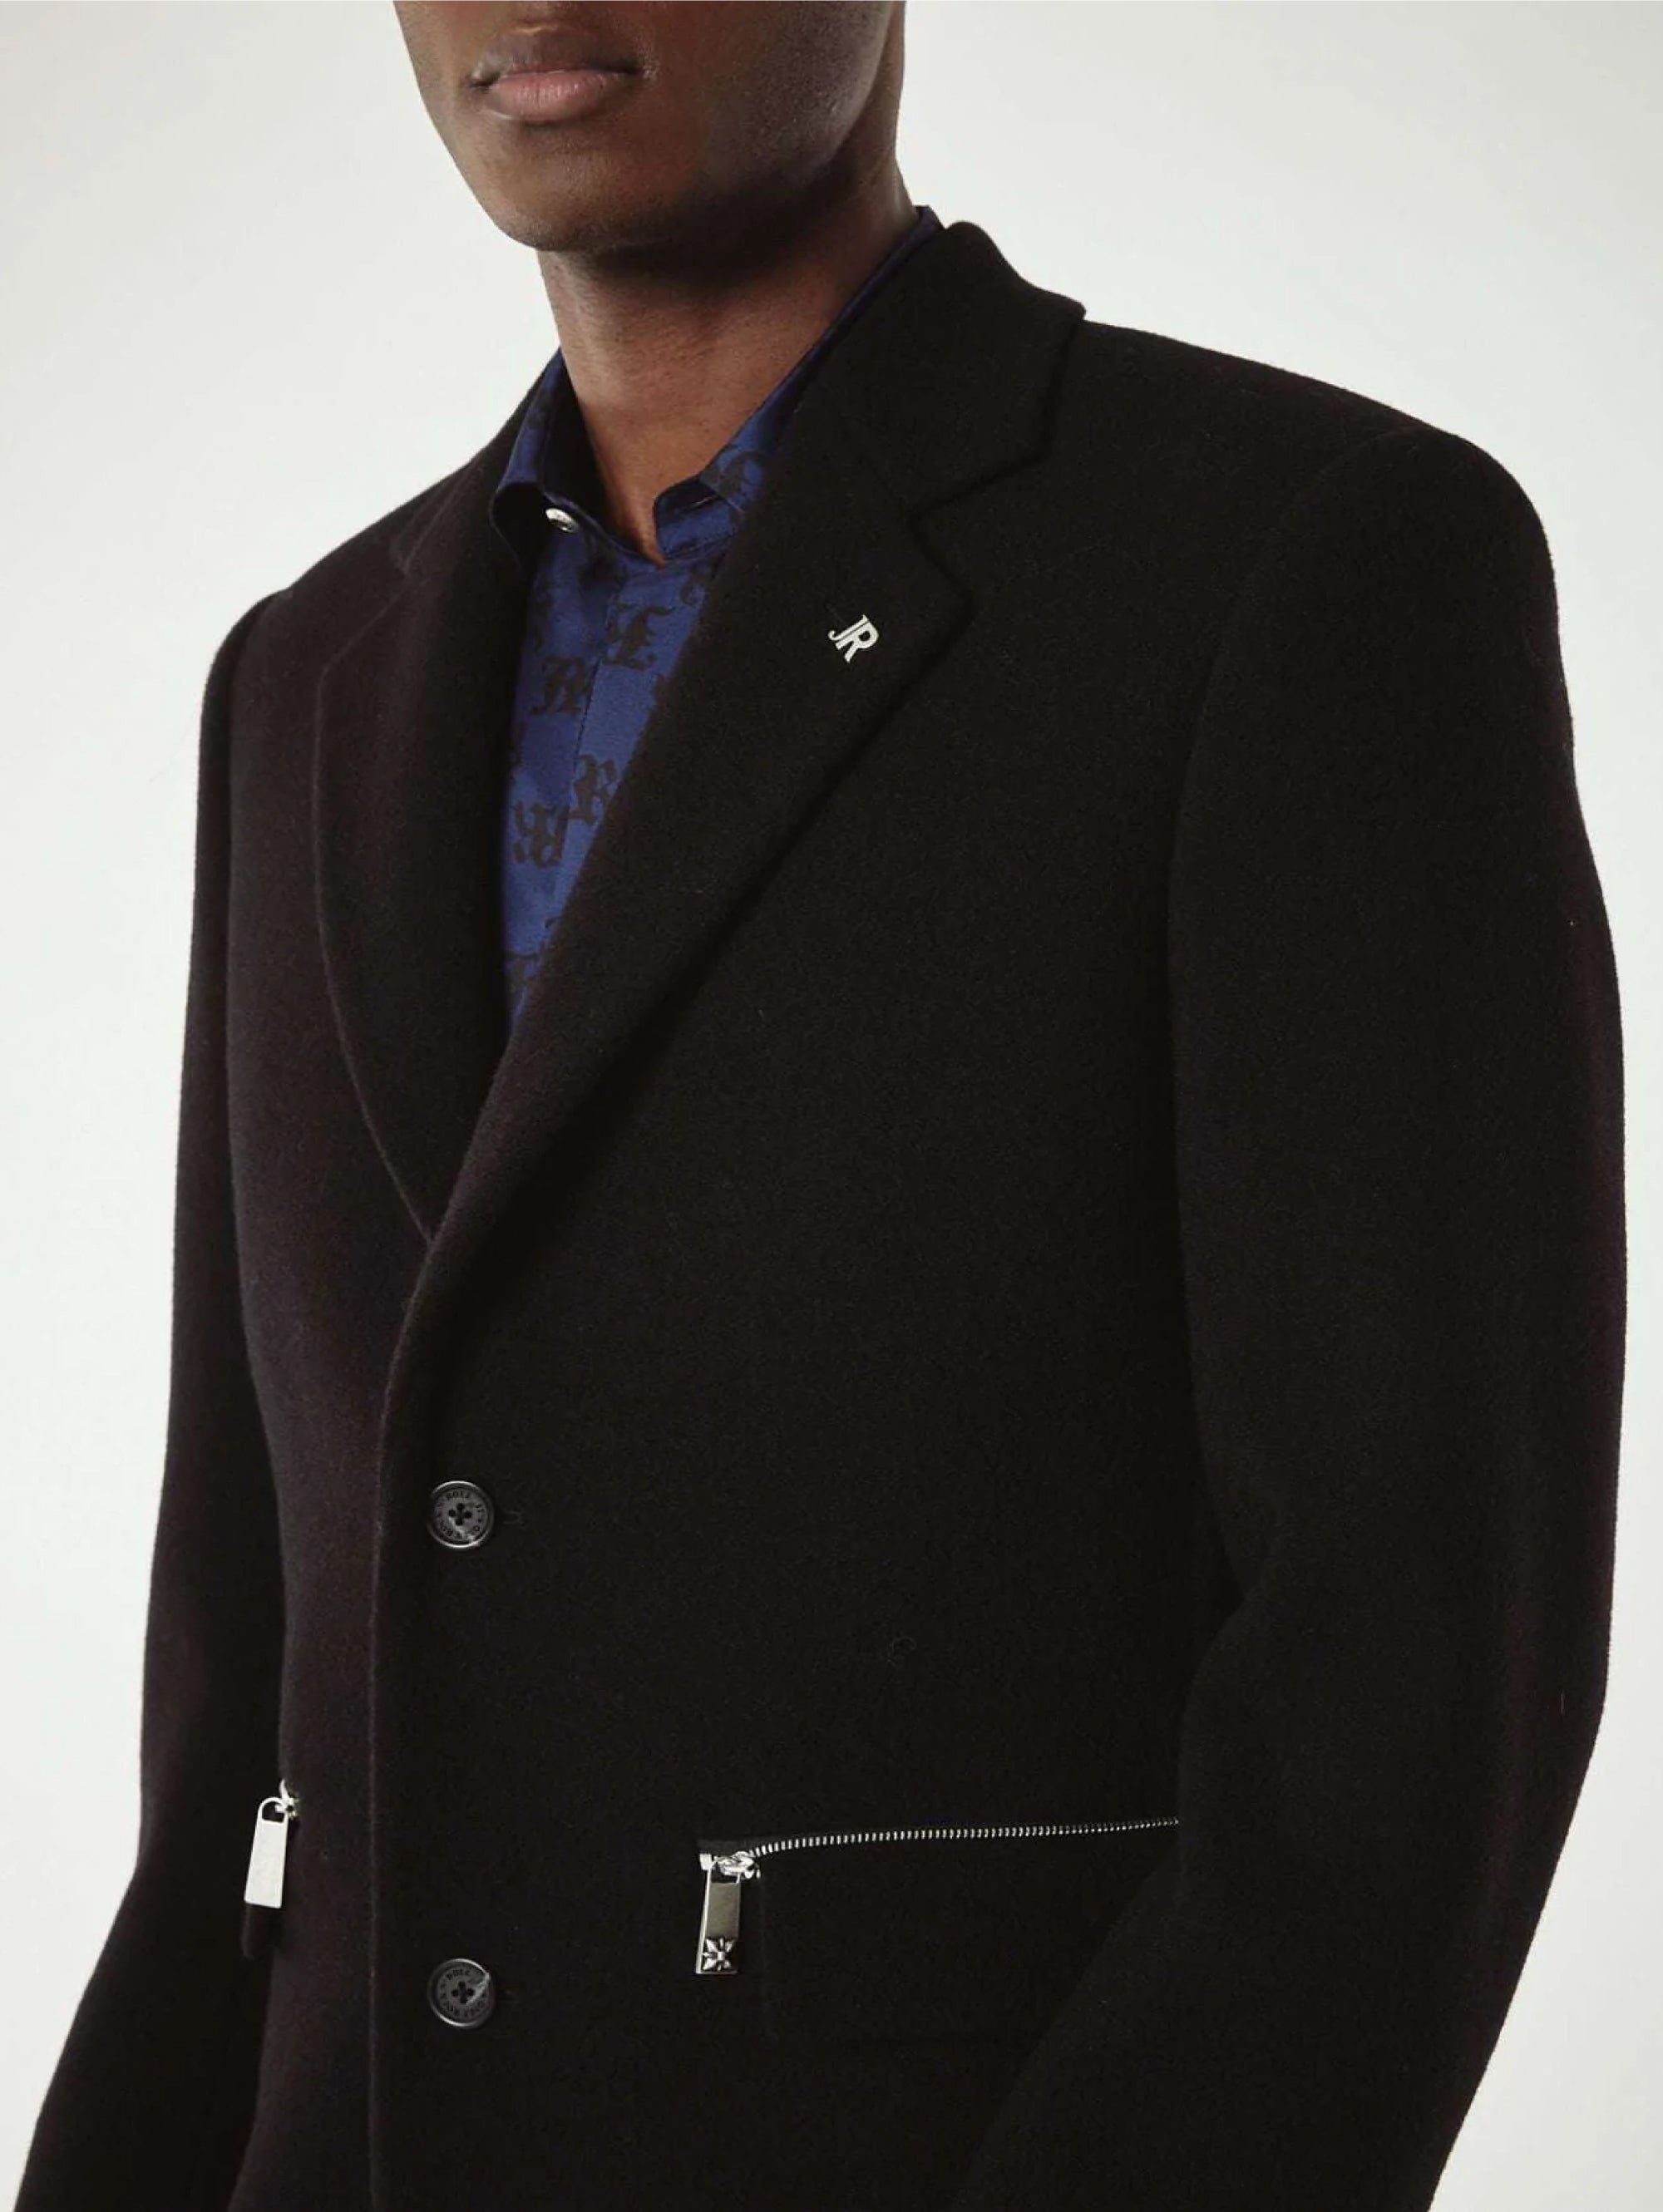 Schwarzer Mantel mit Reißverschluss hinten